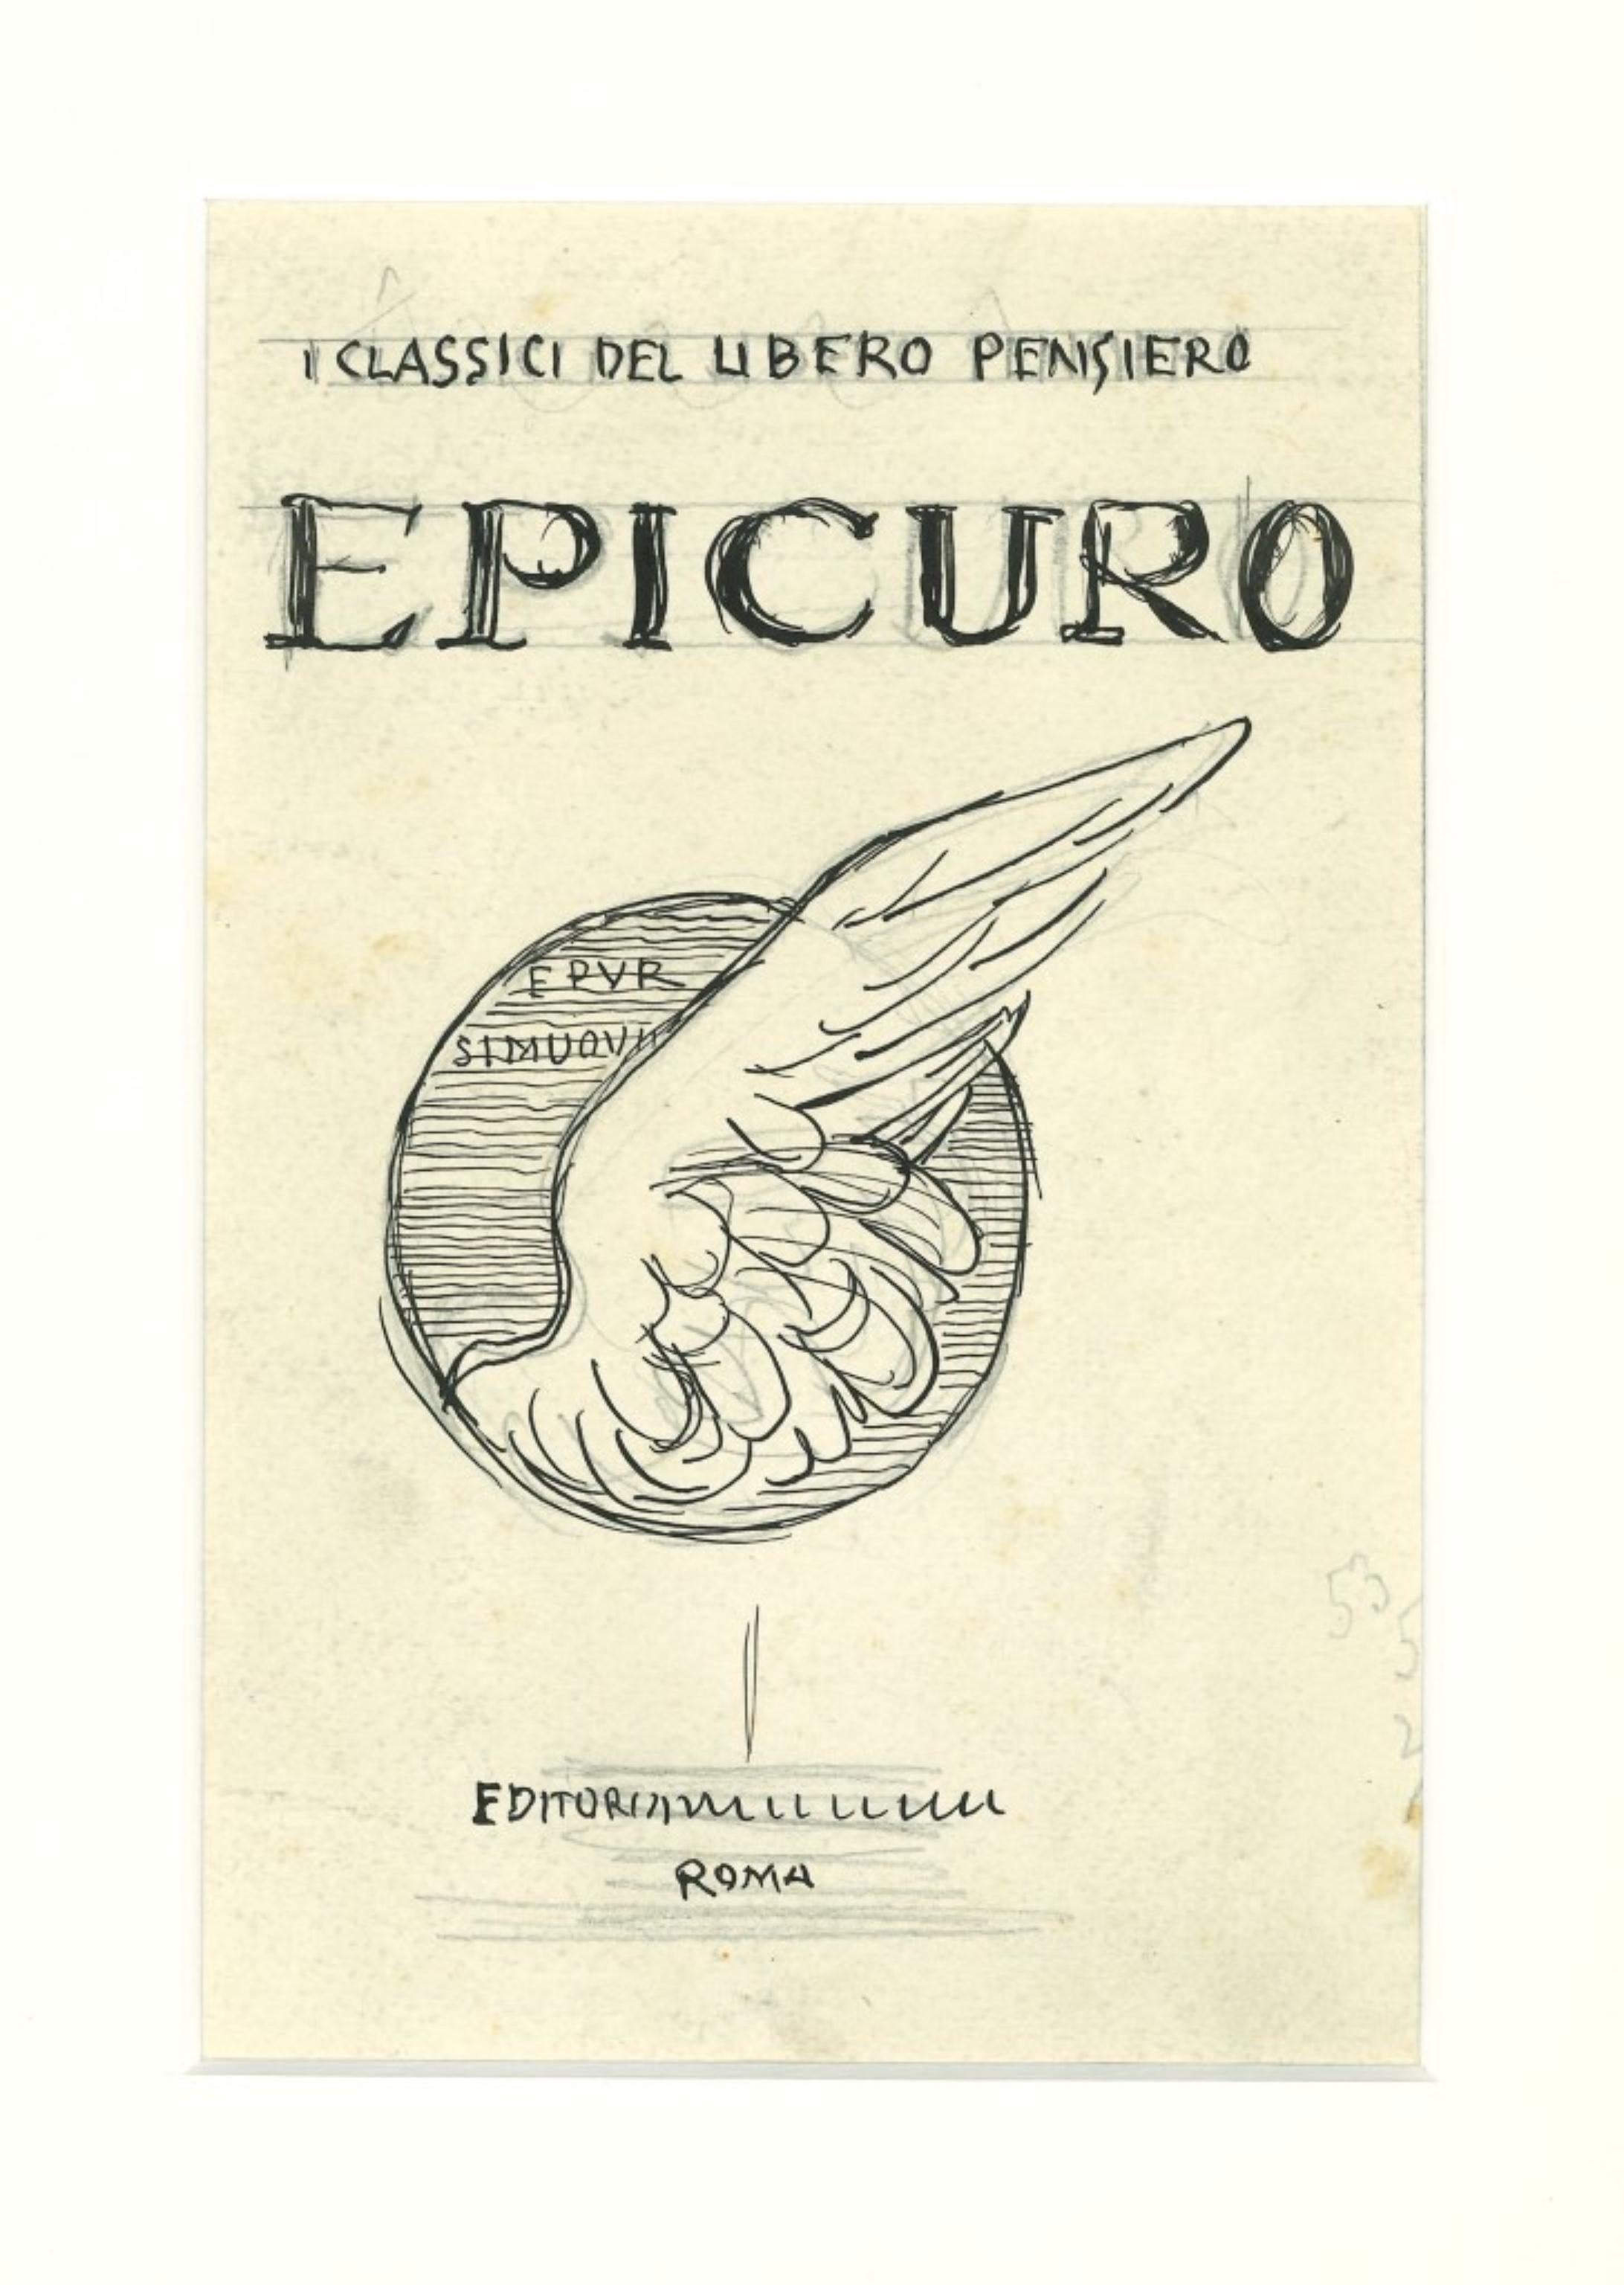 Epicuro ist eine Originalzeichnung in Porzellantusche, die als Studie für einen Bucheinband von Gabriele Galantara realisiert wurde. Der Erhaltungszustand des Kunstwerks ist gut.

Dieses Kunstwerk stellt ein zentrales Synonym mit Vogelflügeln